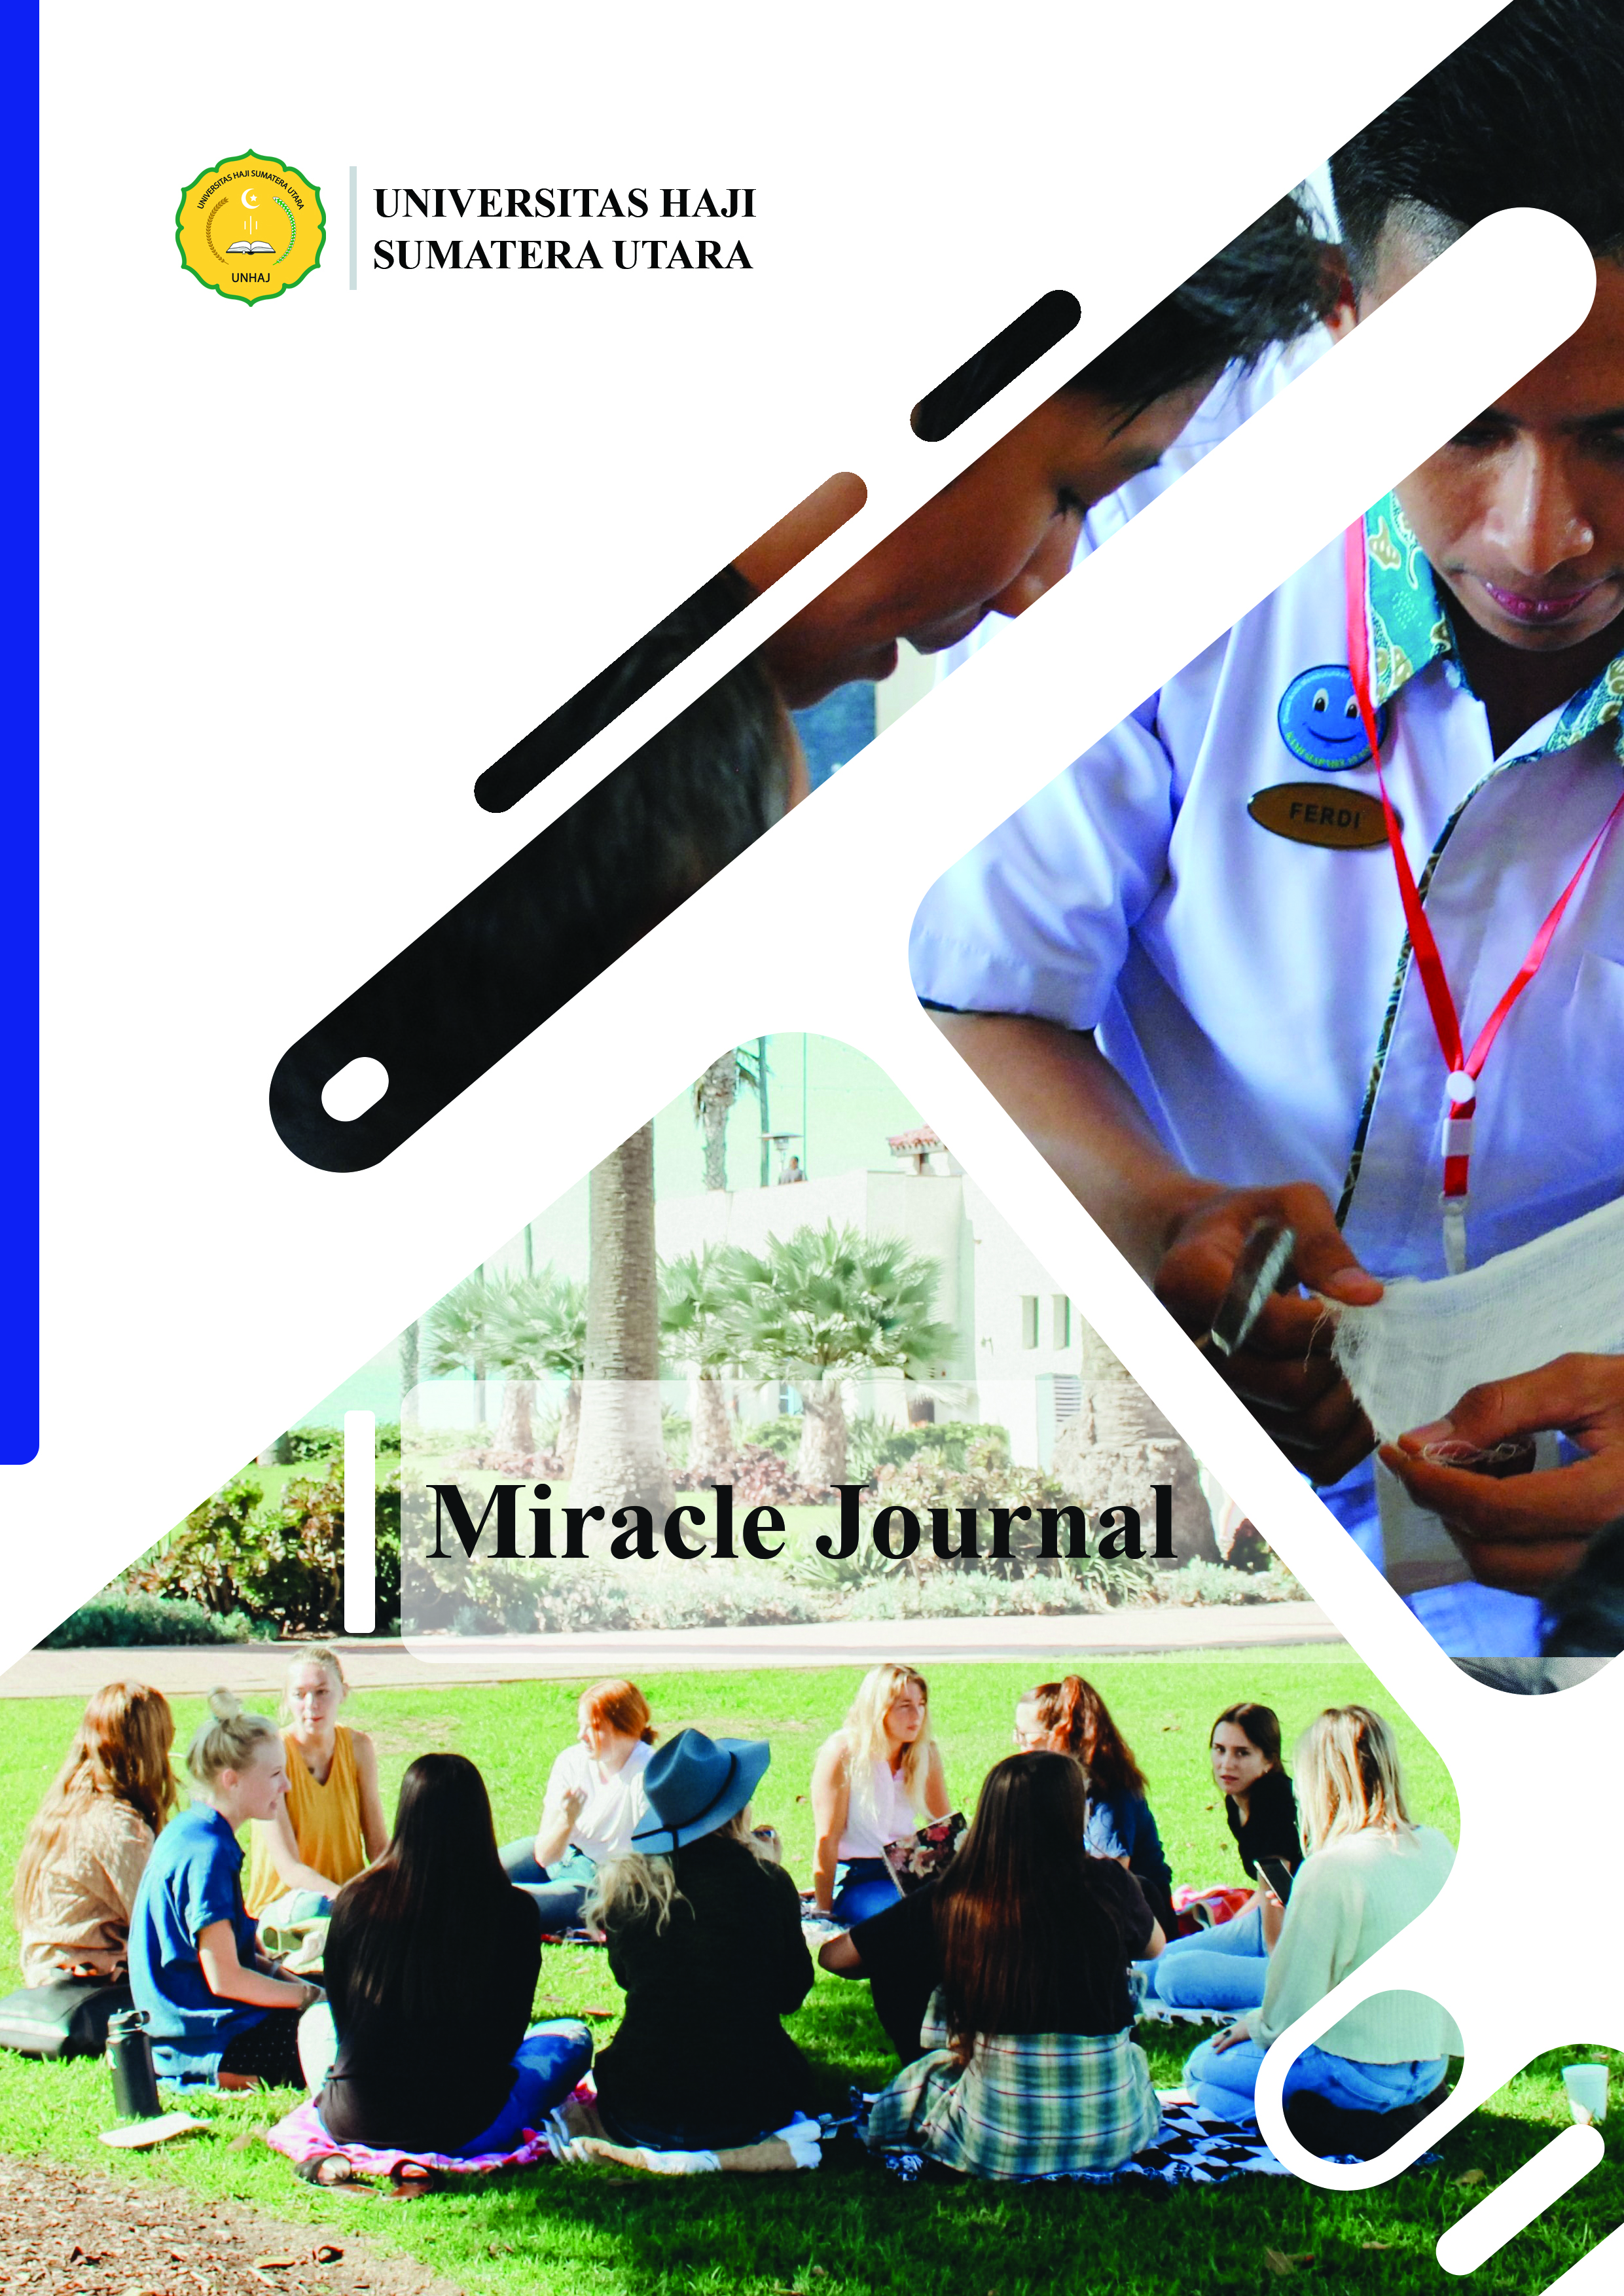 Jurnal Miracle Journal Universitas Haji Sumatera Utara